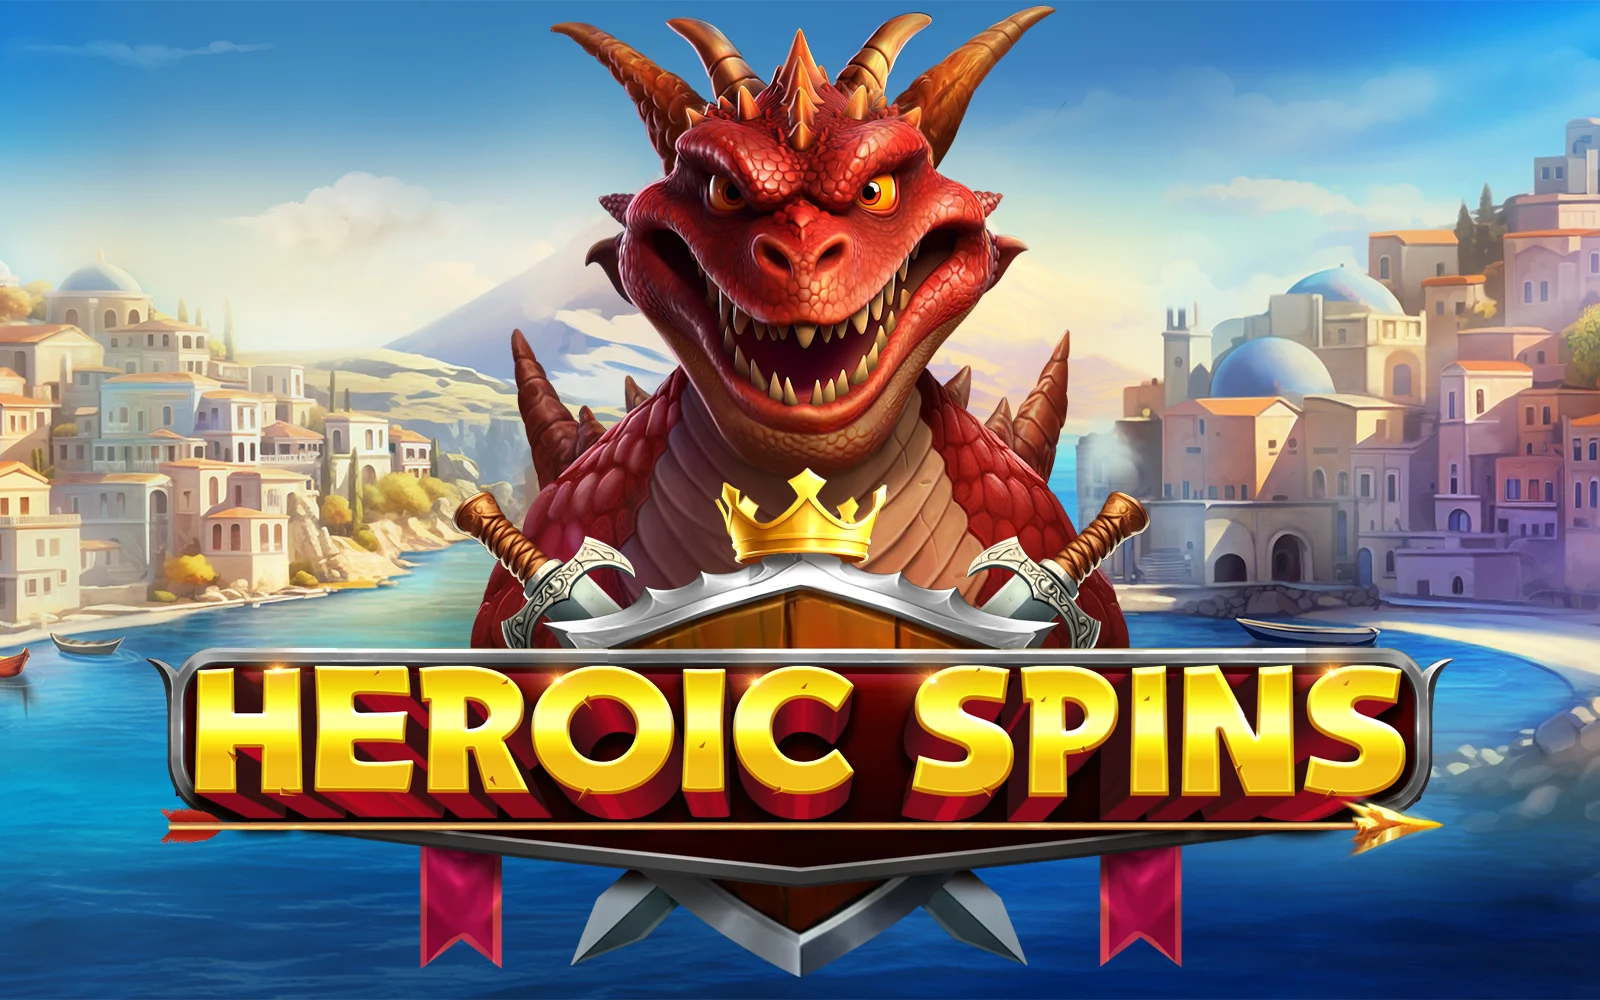 Zagraj w Heroic Spins w kasynie online Starcasino.be